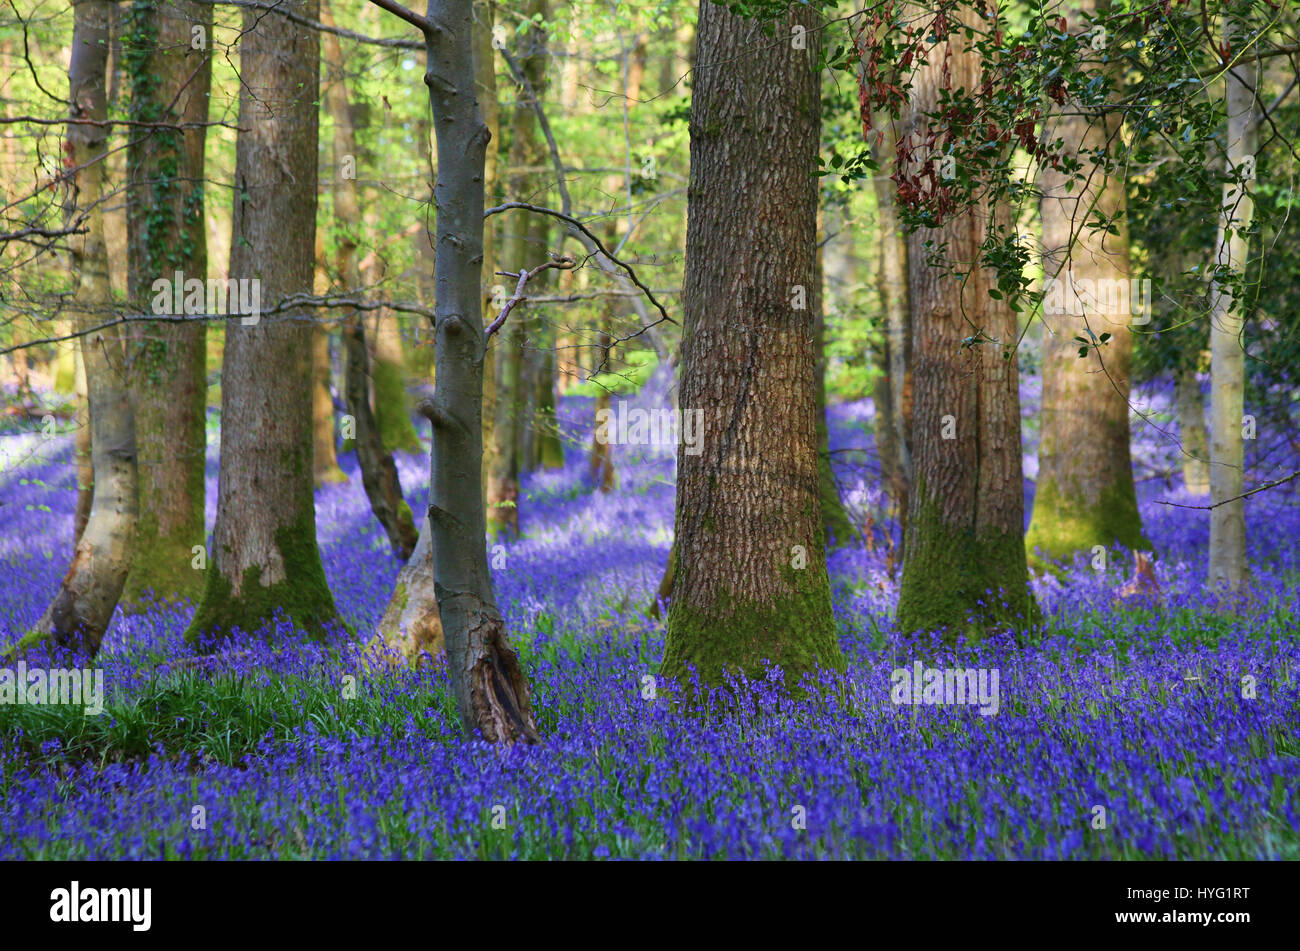 FOREST OF DEAN, UK: A üppigen Teppich aus Glockenblumen hat der Forest of Dean auf spektakuläre Weise abgedeckt. Bilder zeigen das Moos bedeckten Baumstämme vollständig vom Meer von blau und grün aus diesen Frühling Zeit Favoriten umgeben. Stockfoto